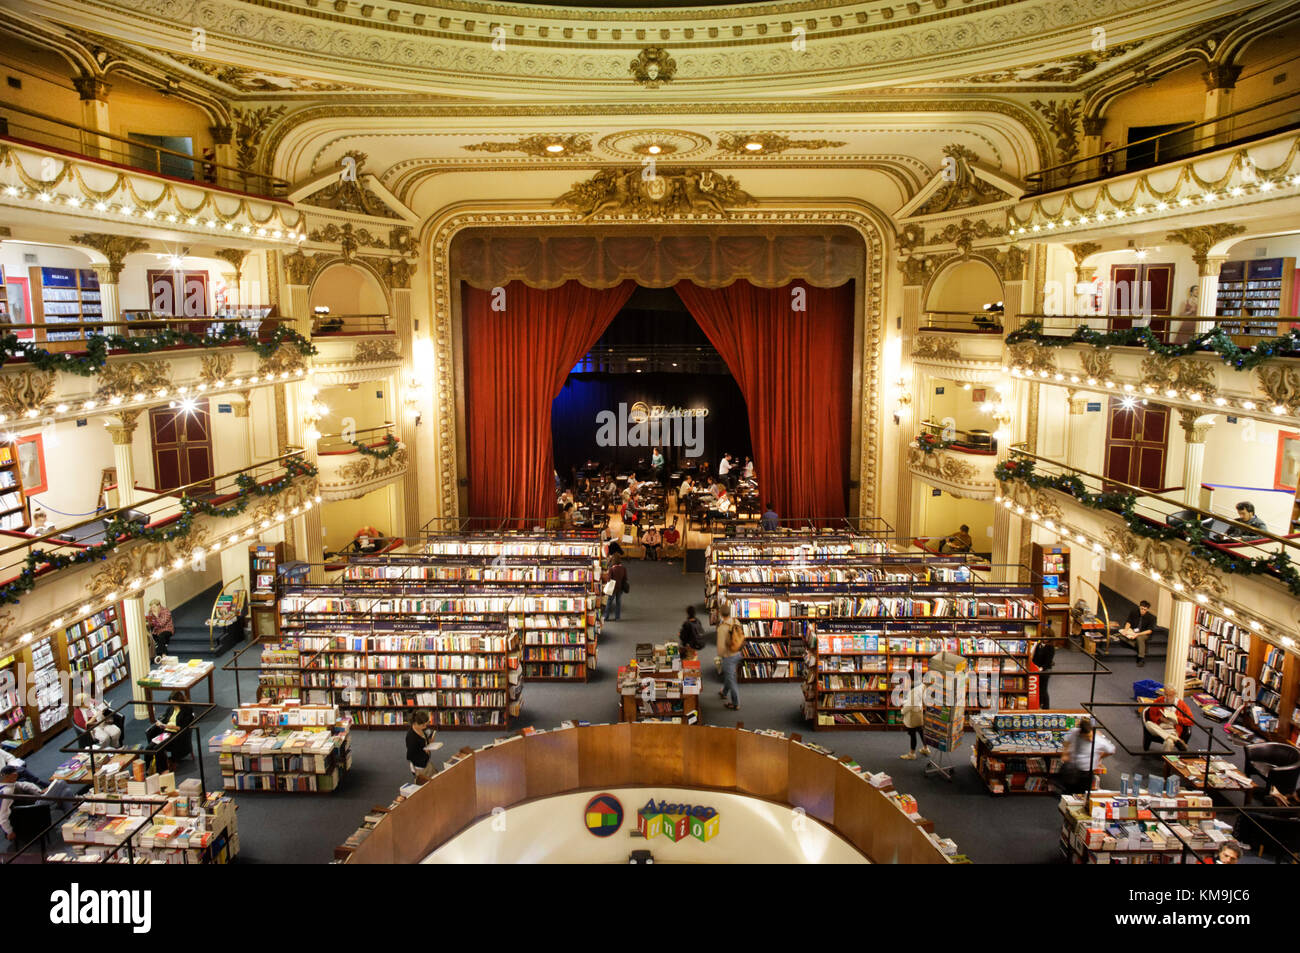 El Ateneo Grand Splendid Book Store in einem ehemaligen Theater, Bibliothek, Buenos Aires, Argentinien Stockfoto